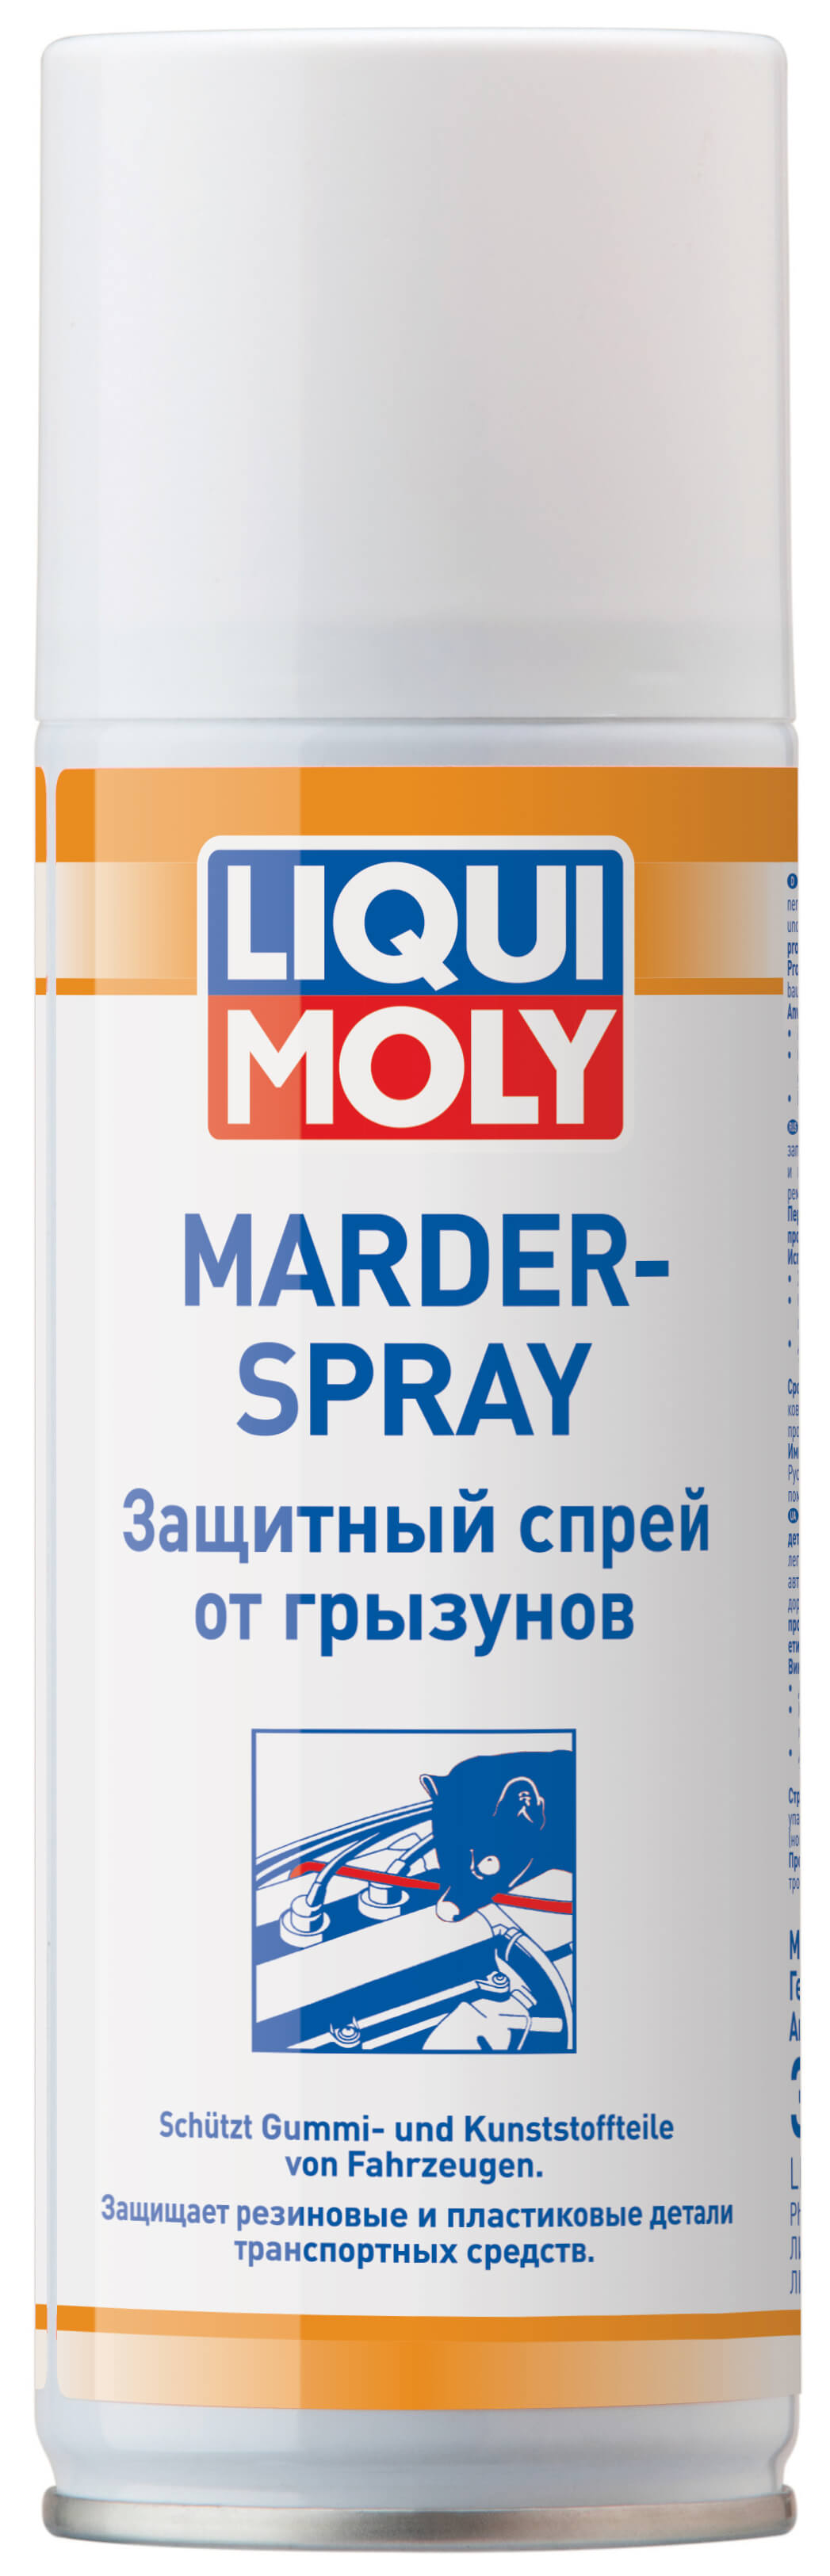 Защитный спрей от грызунов Marder-Spray (0,2л)